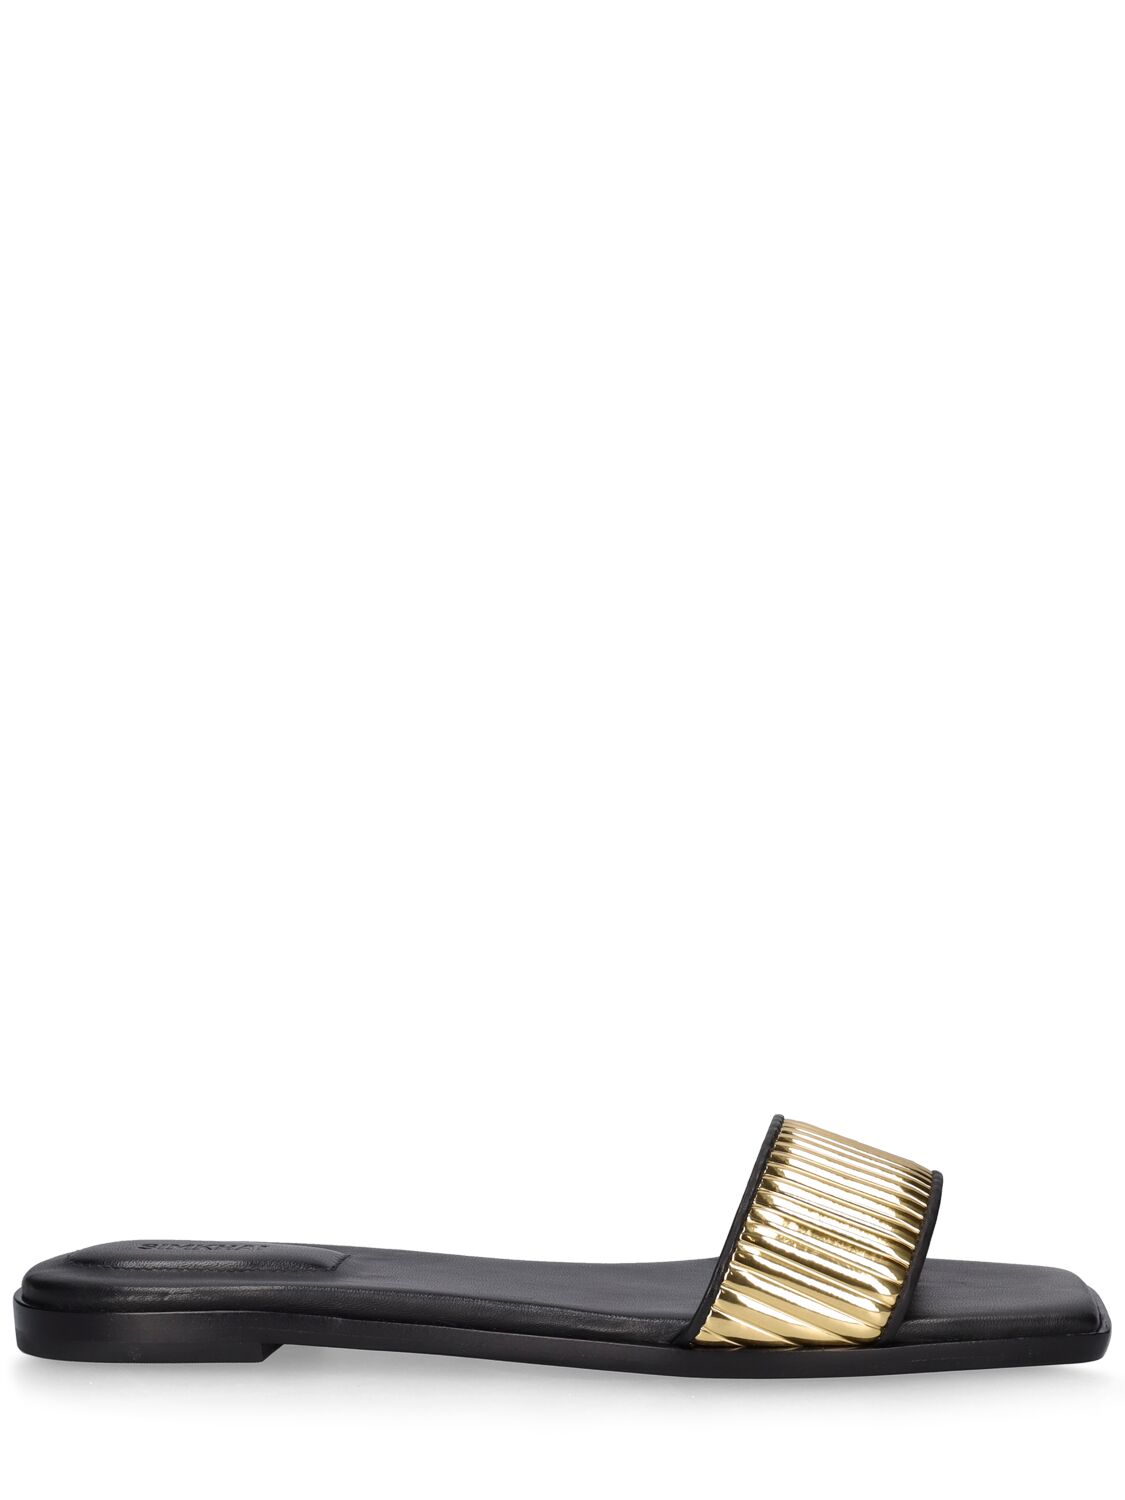 Carter Vegan Leather Slide Sandals